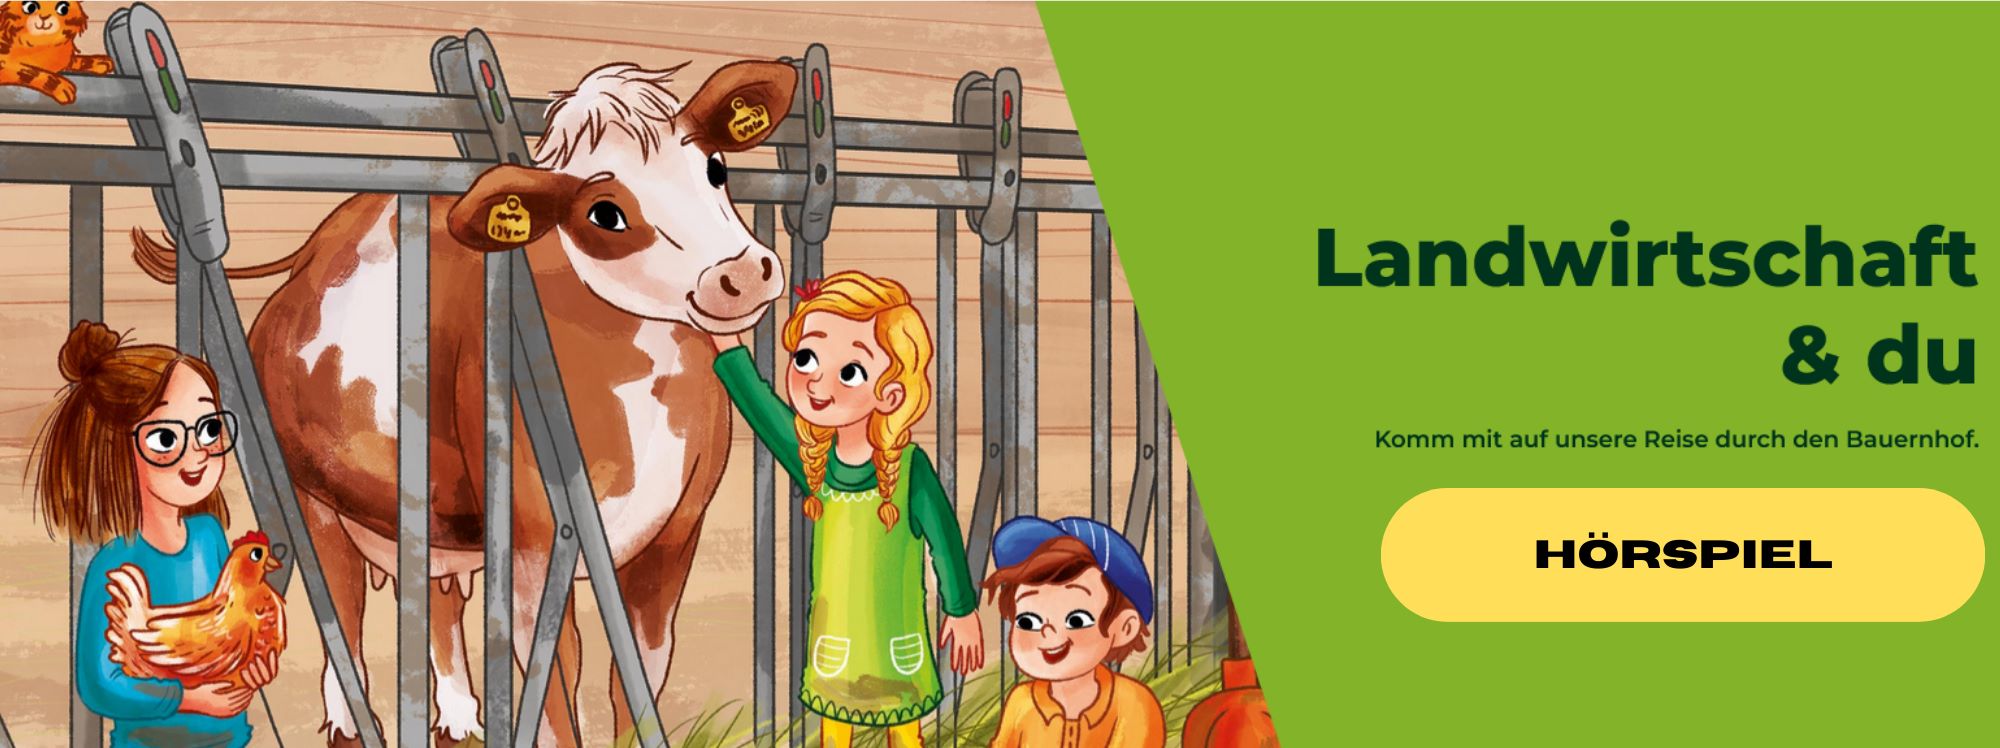 Am Titelbild von Landwirtschaft und du sind drei Kinder mit einer Kuh, einer Henne und einer Katze in einem Stall mit Kombinationshaltung abgebildet.